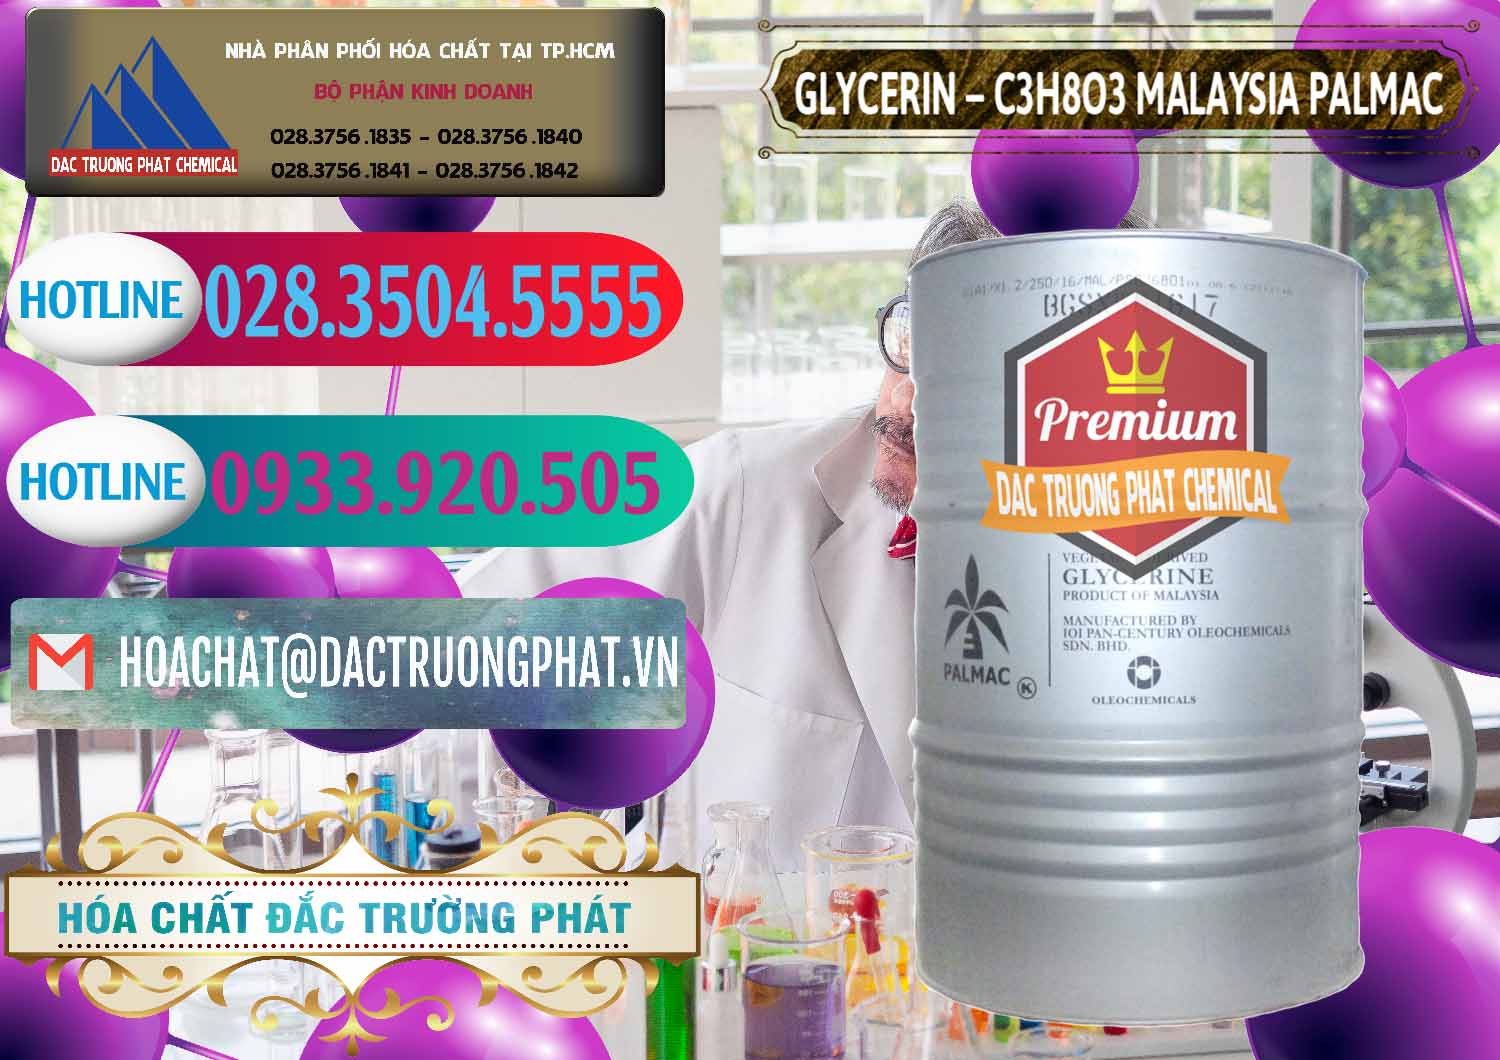 Chuyên bán - cung cấp Glycerin – C3H8O3 99.7% Malaysia Palmac - 0067 - Đơn vị cung ứng và phân phối hóa chất tại TP.HCM - truongphat.vn